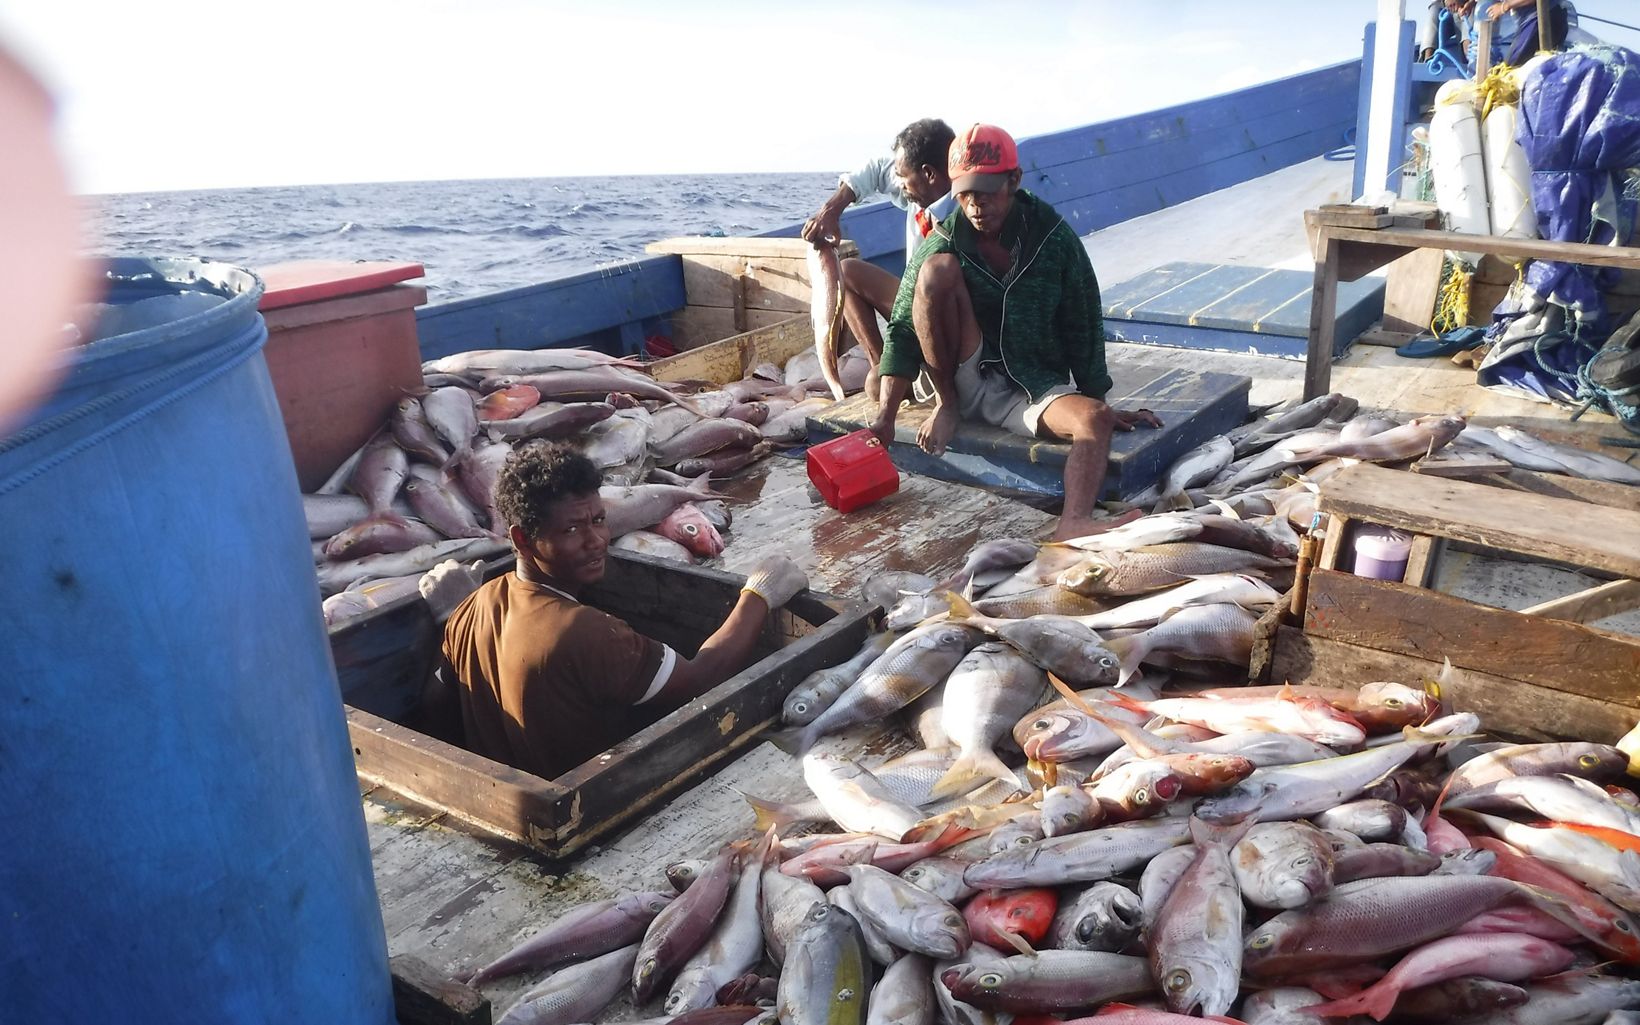 Hasil Tangkapan Nelayan Para nelayan sedang berada diatas perahu dengan hasil tangkapannya sesuai dengan metode perikanan berkelanjutan. © YKAN